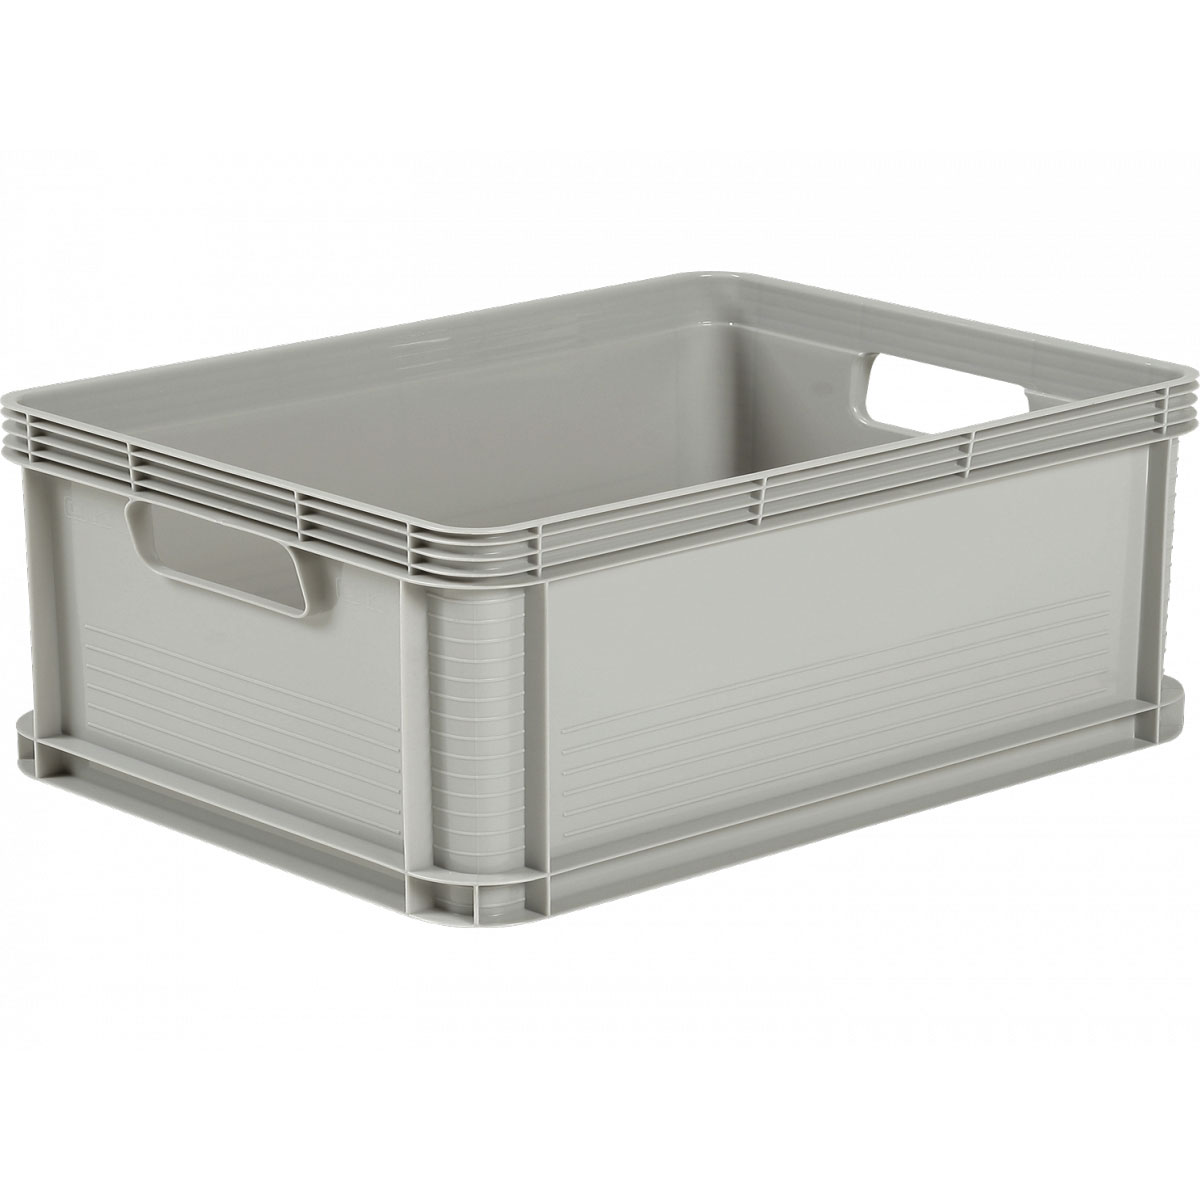 Robusto-Box 64 L grau Aufbewahrungsbox Box Kiste 